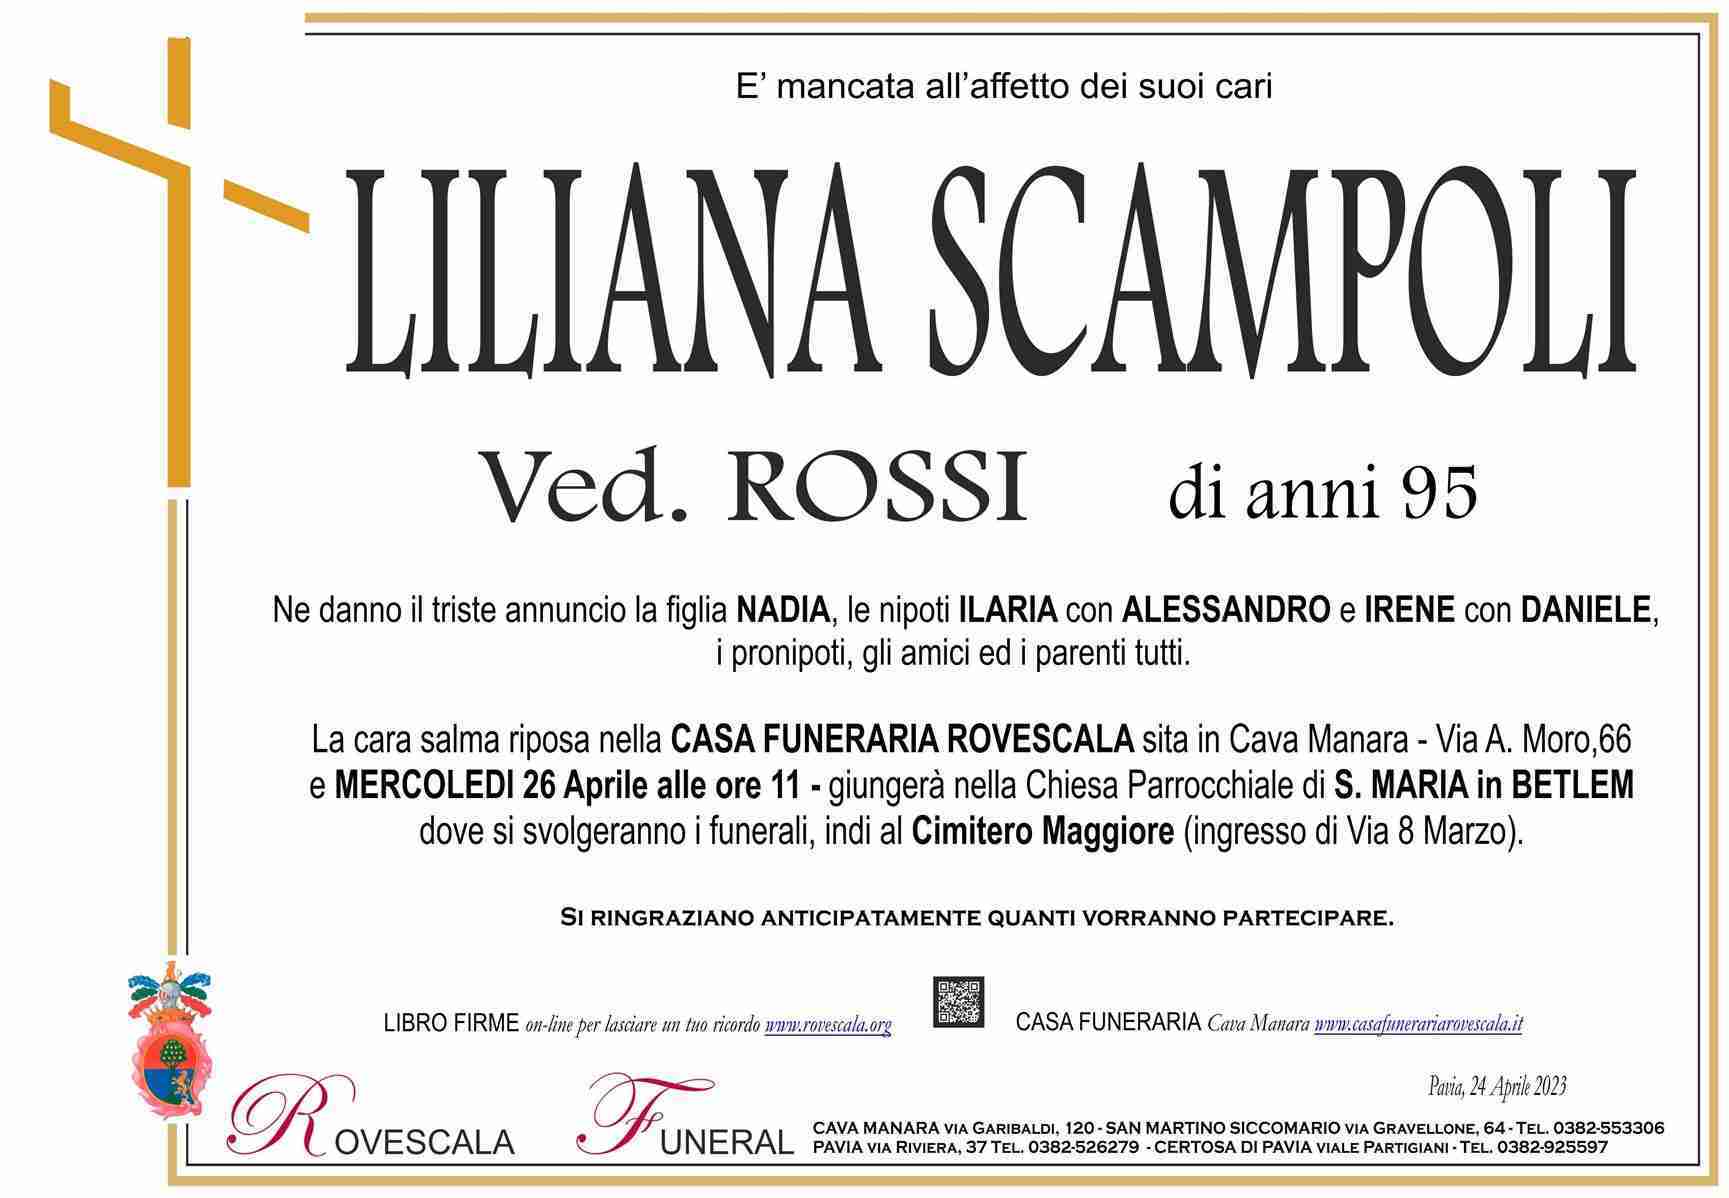 Liliana Scampoli